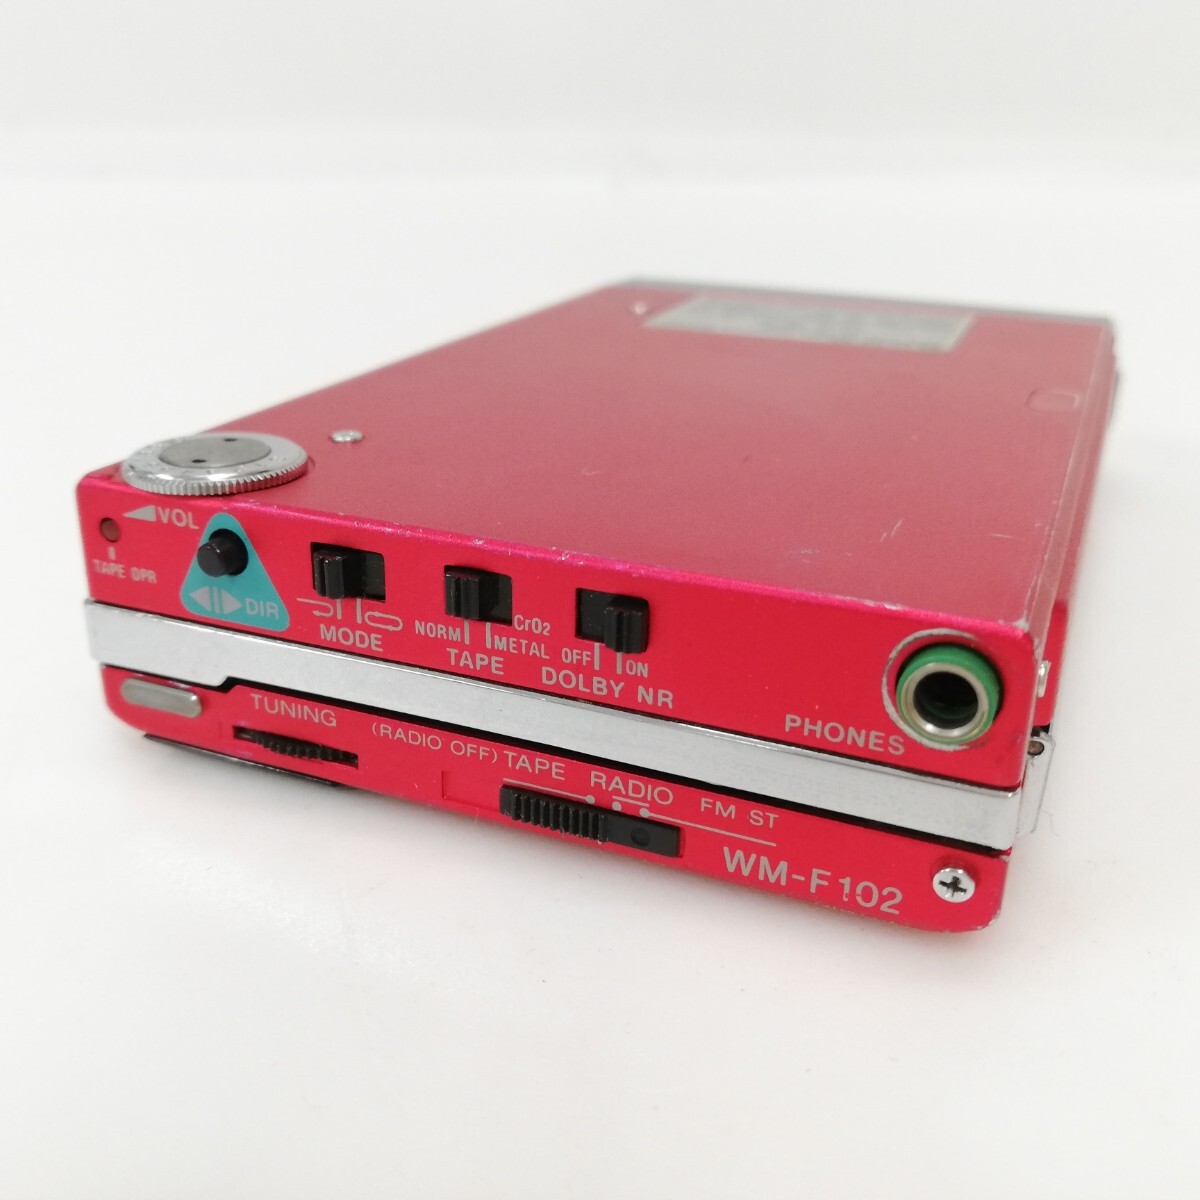 6 SONY Sony WALKMAN Walkman FM AM портативный кассетная магнитола WM-F101 кассетная магнитола радио красный электризация не проверка Junk 